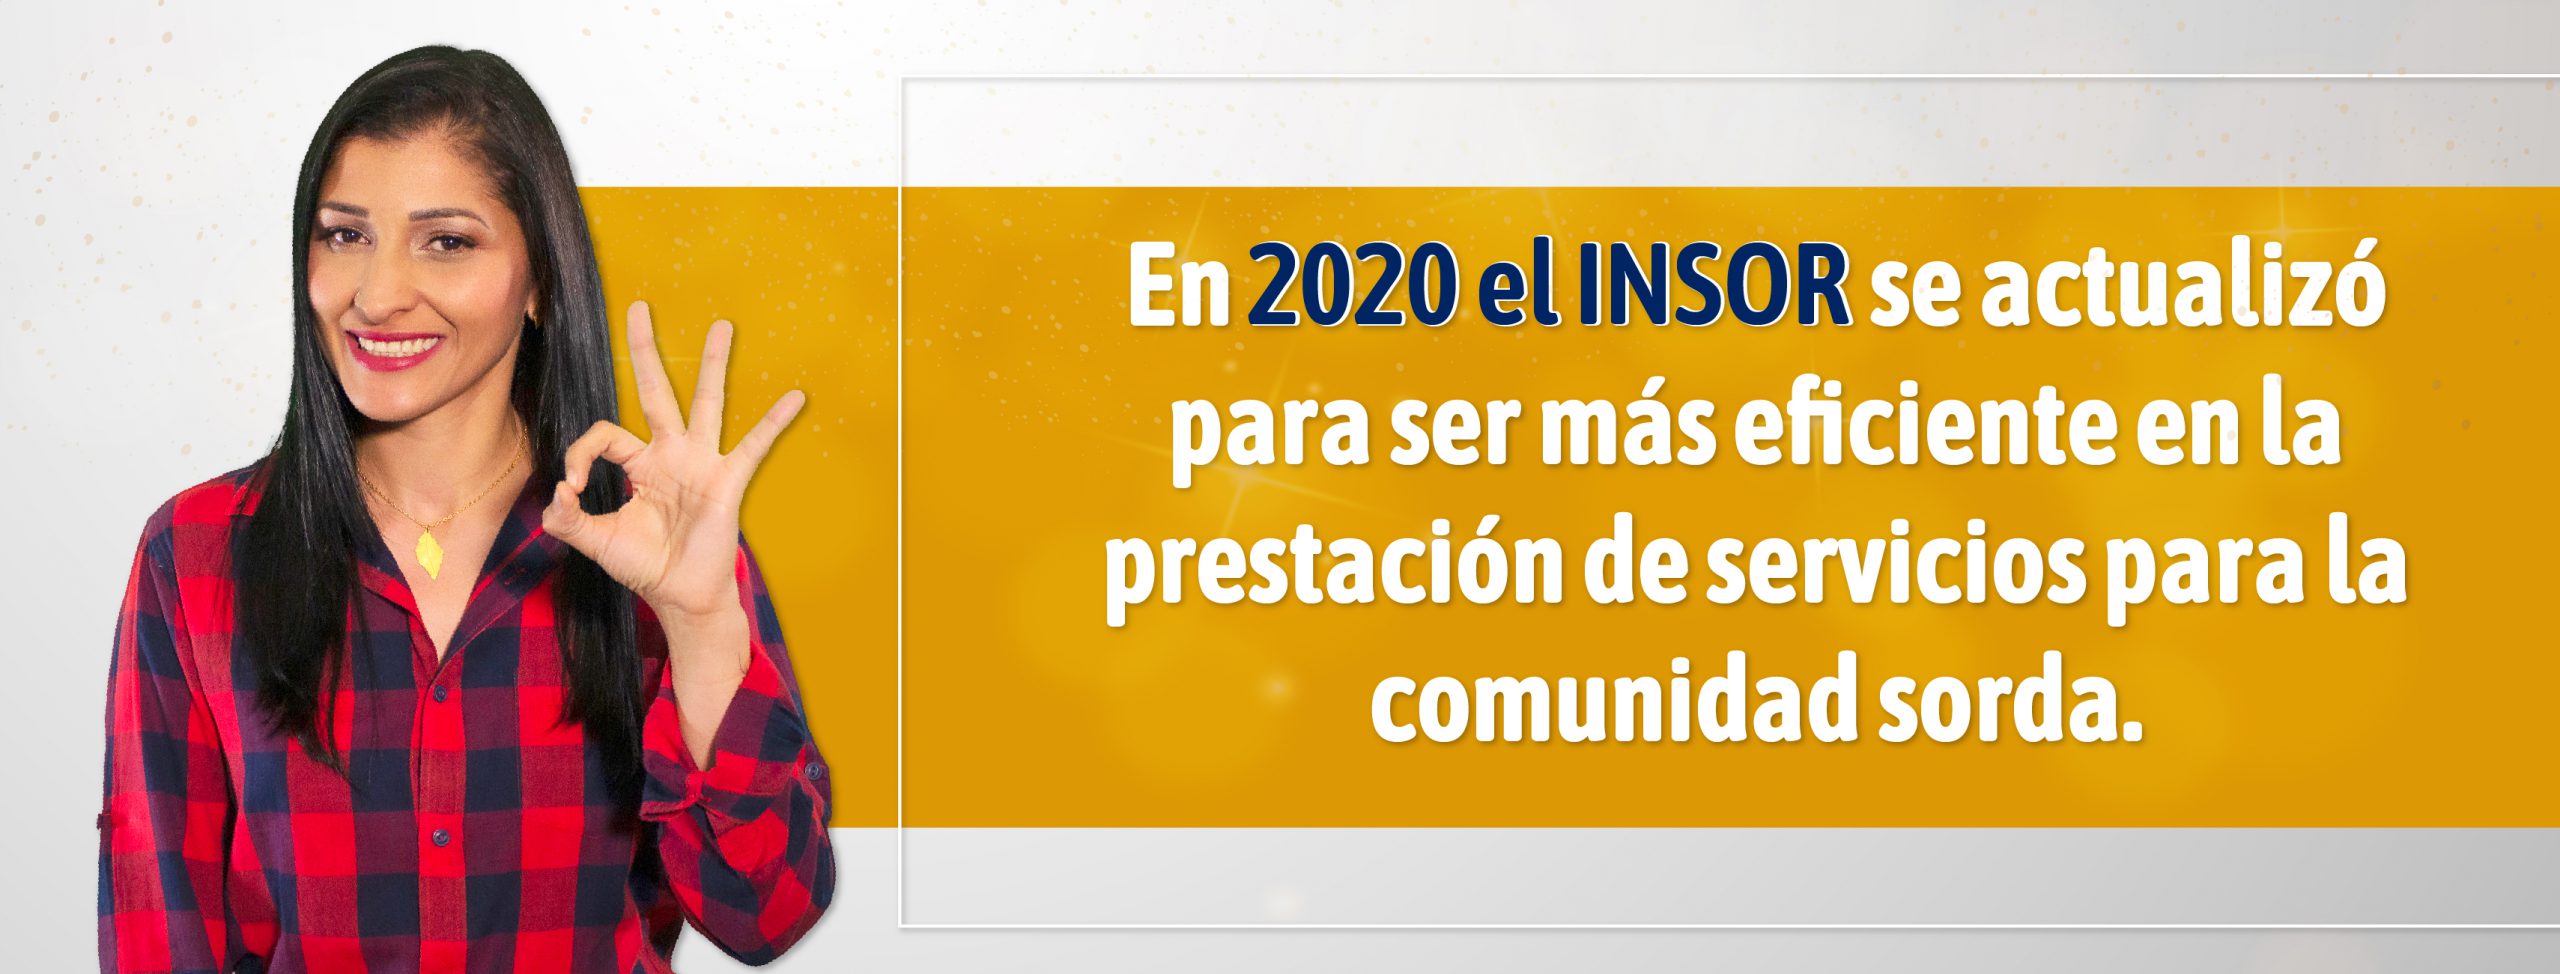 En 2020 el INSOR se actualizó para ser más eficiente en la prestación de servicios para la comunidad sorda